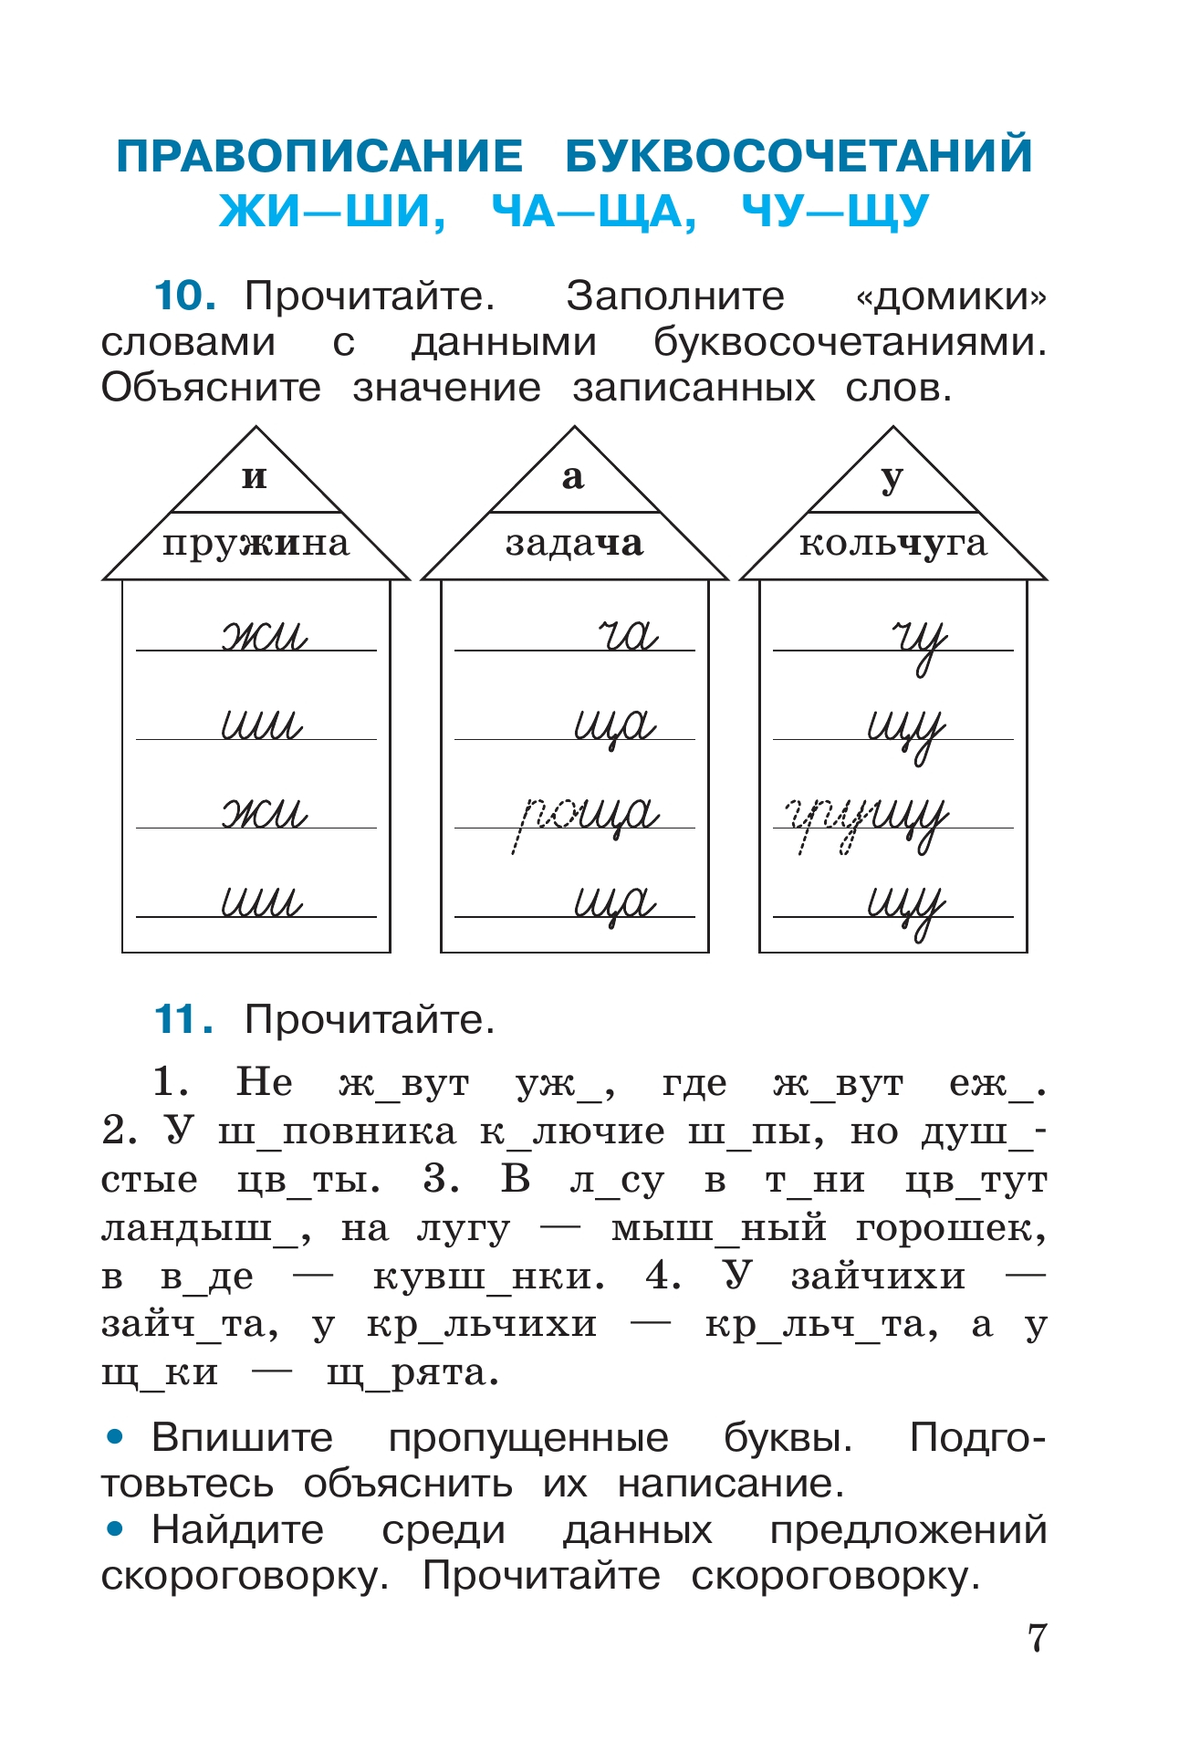 Русский язык. Рабочая тетрадь. 2 класс. В 2-х ч. Ч. 2 6